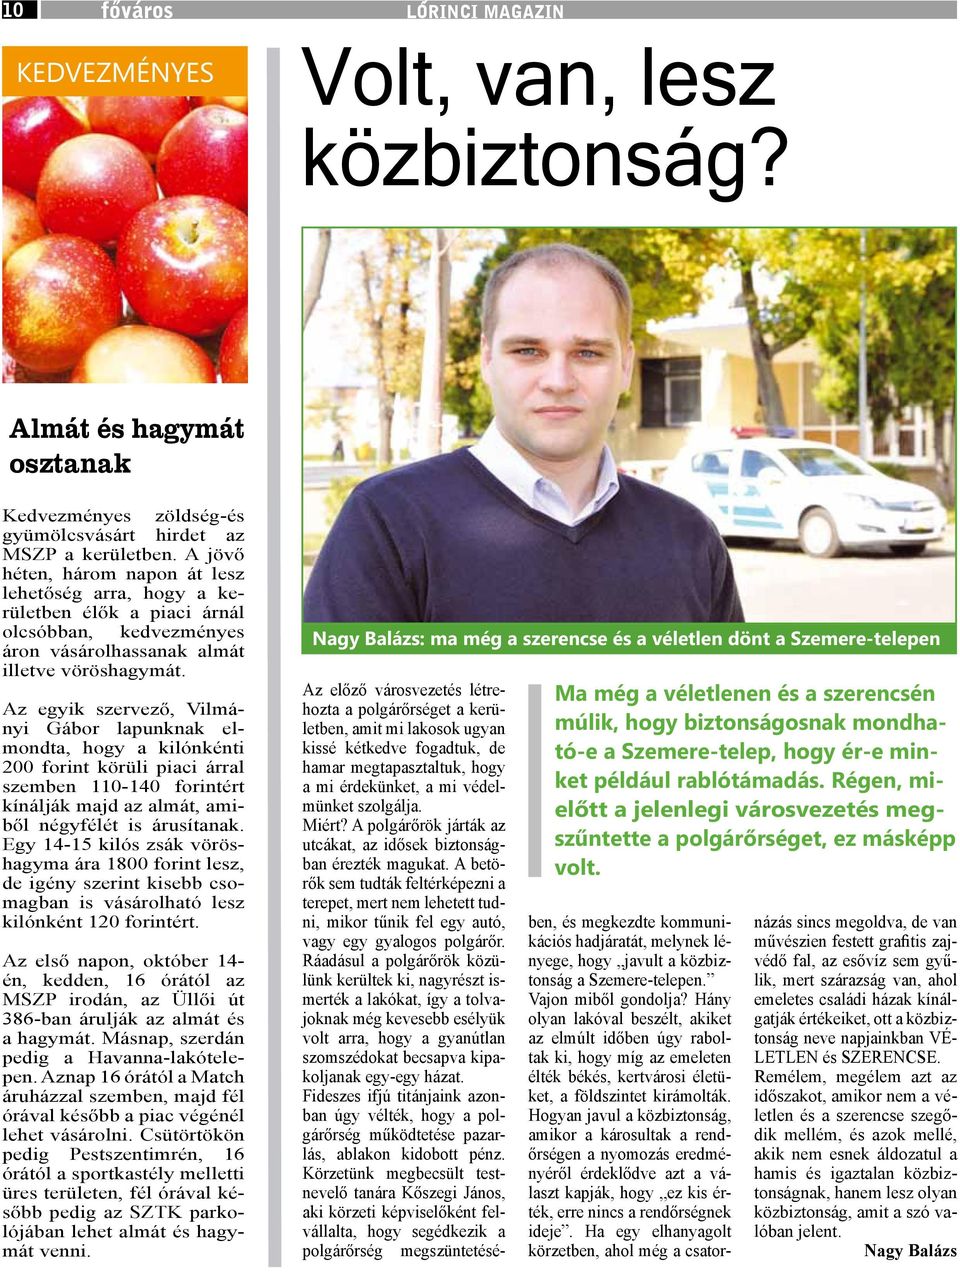 Az egyik szervező, Vilmányi Gábor lapunknak elmondta, hogy a kilónkénti 200 forint körüli piaci árral szemben 110-140 forintért kínálják majd az almát, amiből négyfélét is árusítanak.